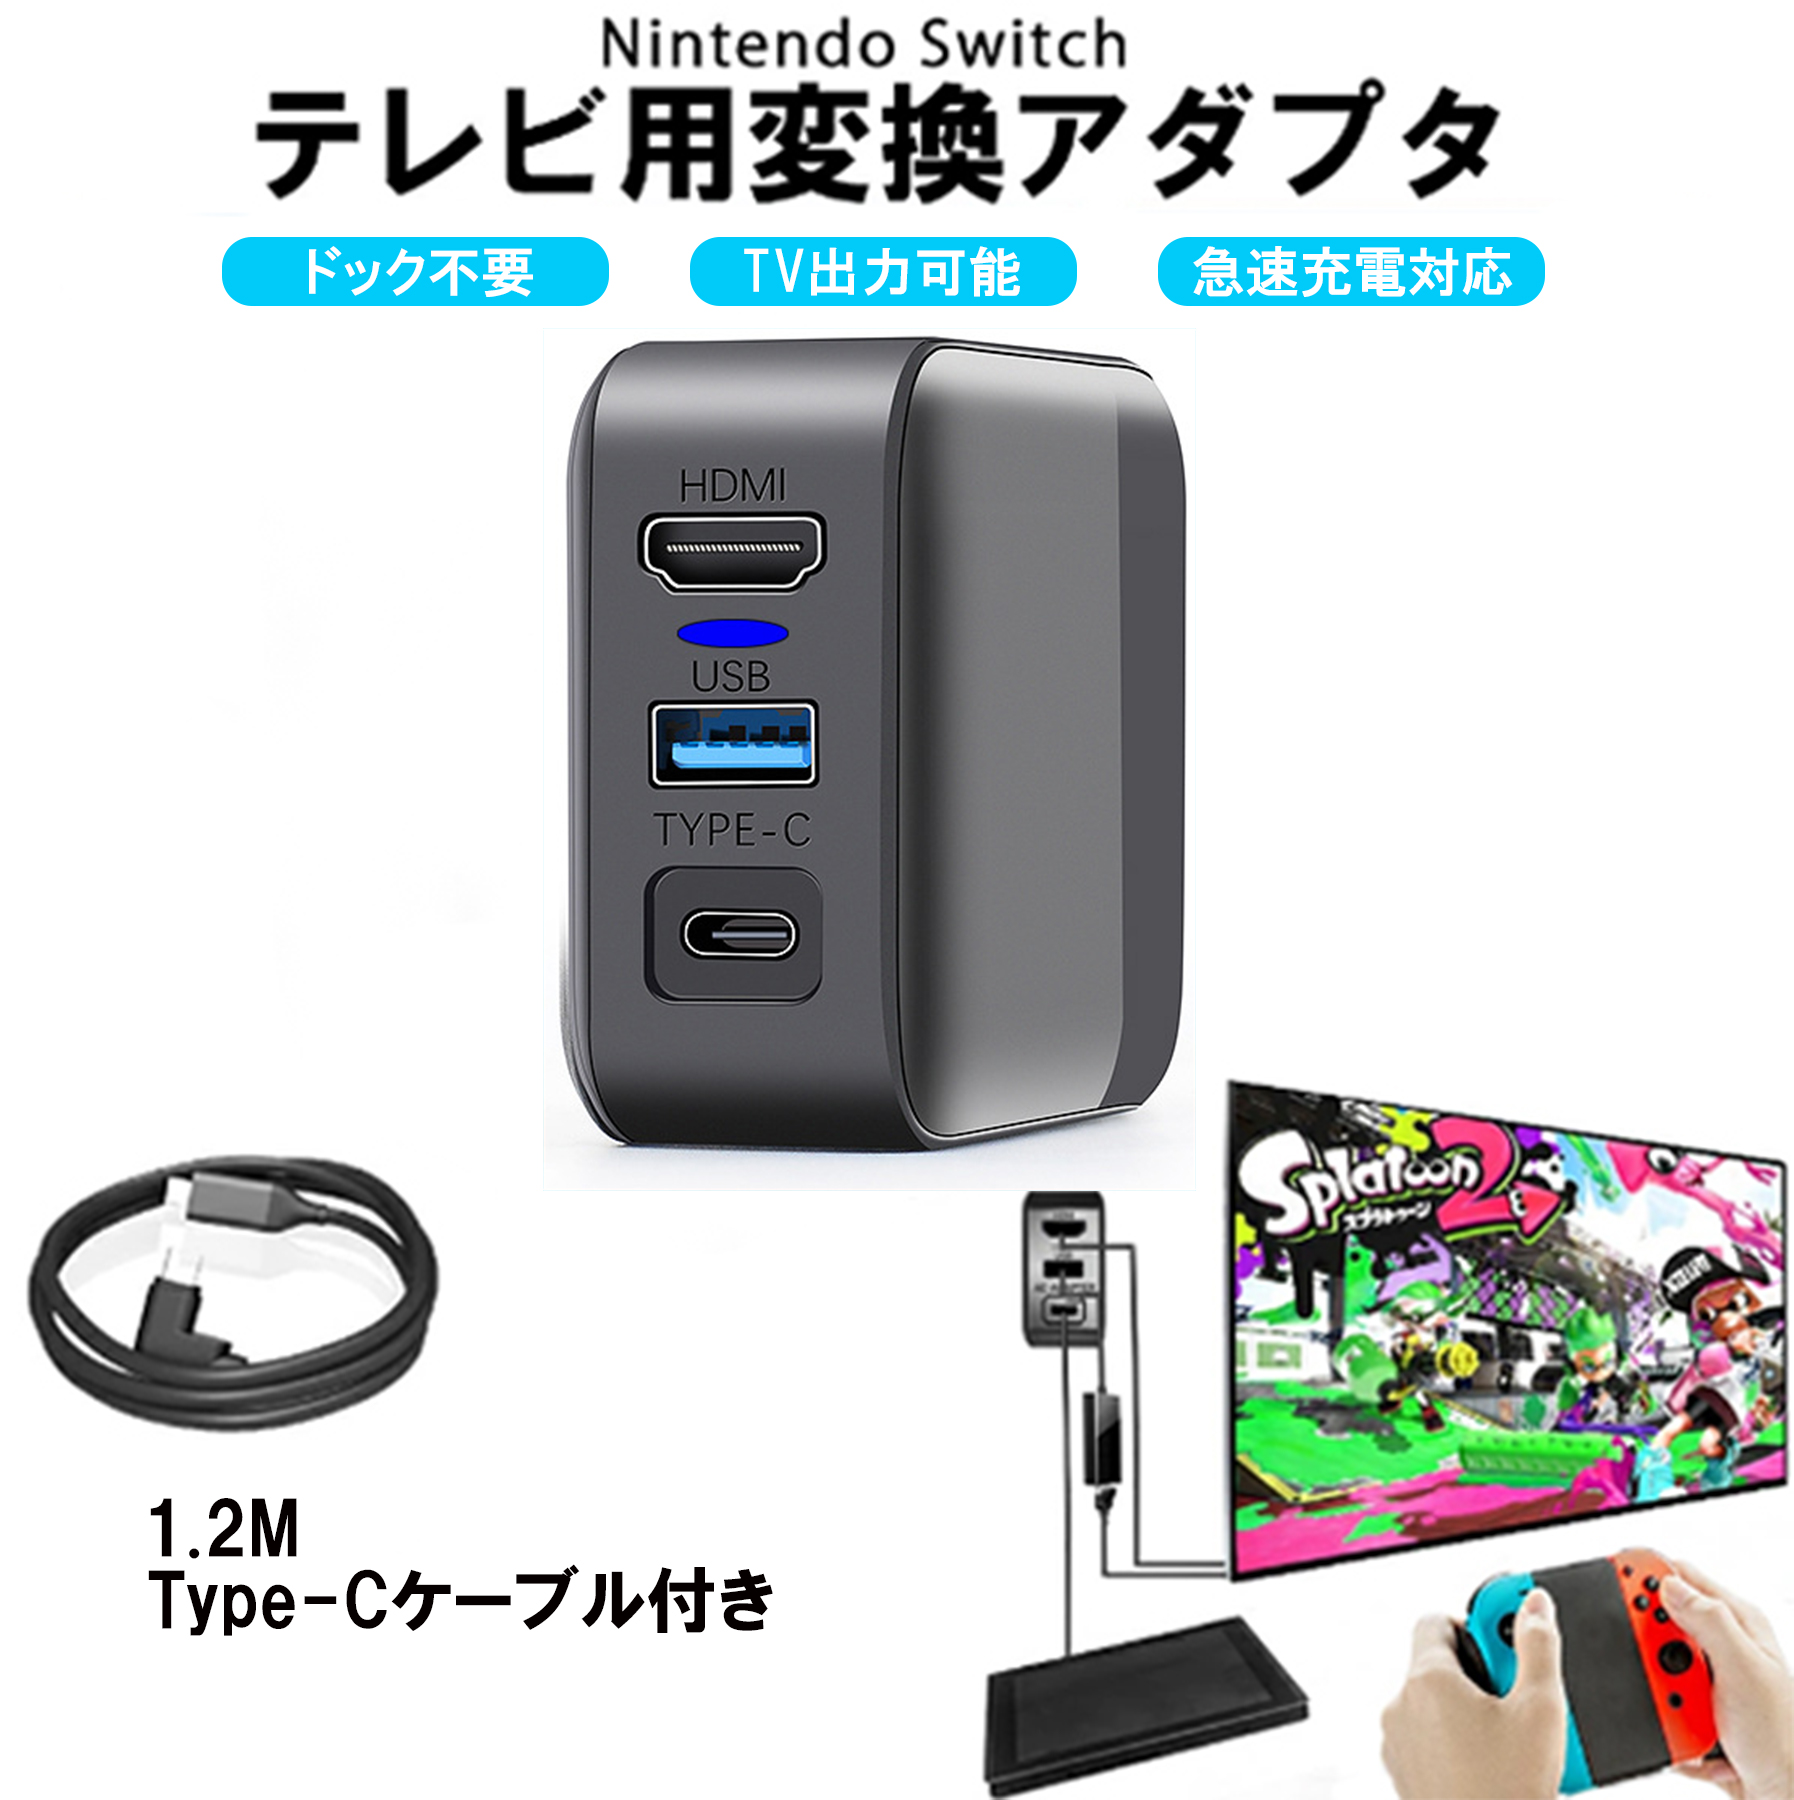 Nintendo Switch 純正品 ドック 電源アダプター HDMIケーブル